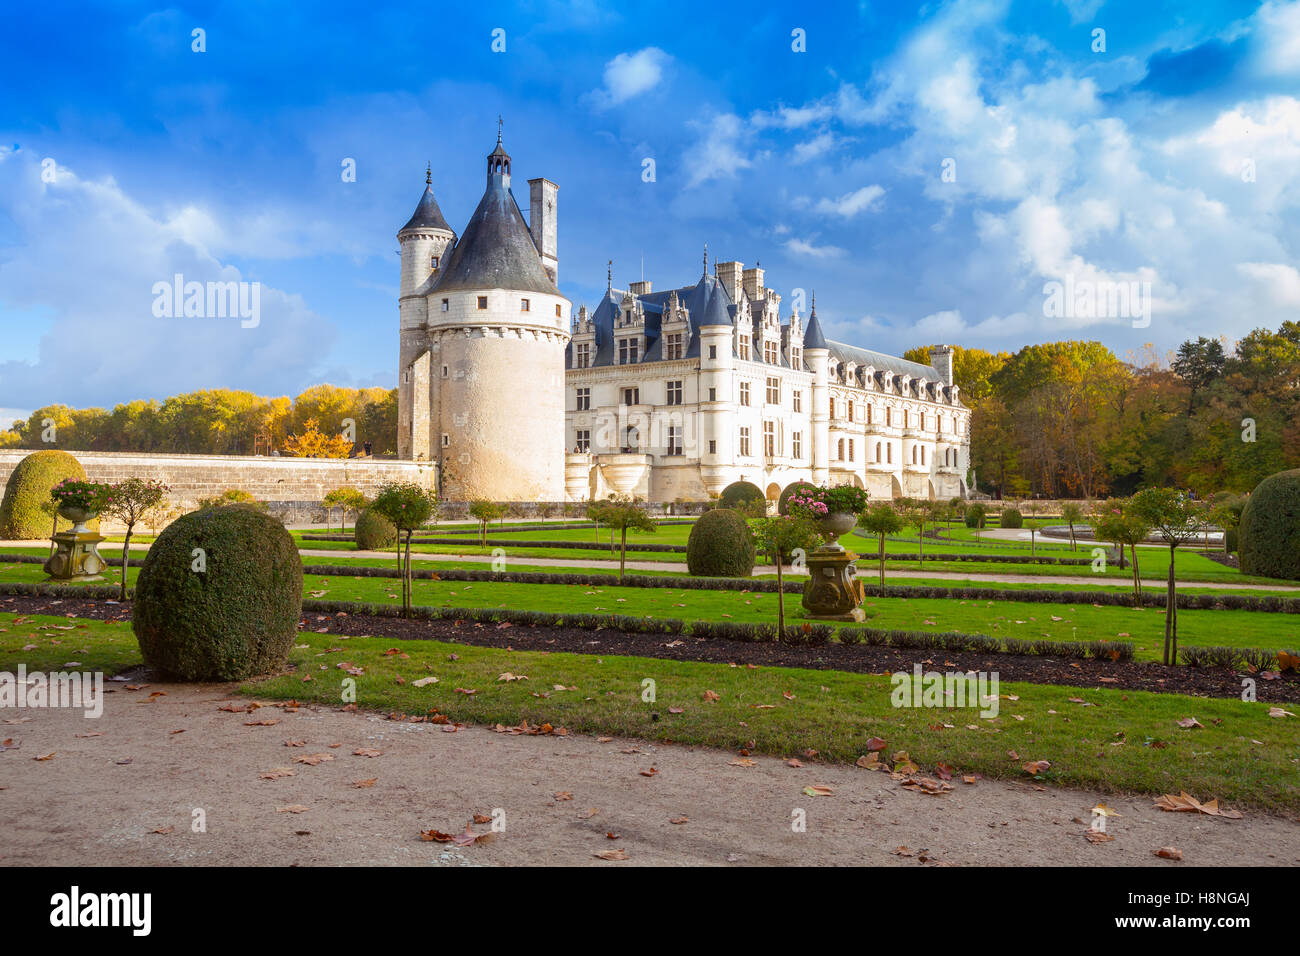 Il Chateau de Chenonceau, royal medievale castello francese nella Valle della Loira, in Francia. È stato costruito nel secolo 15-16, architettonico Foto Stock